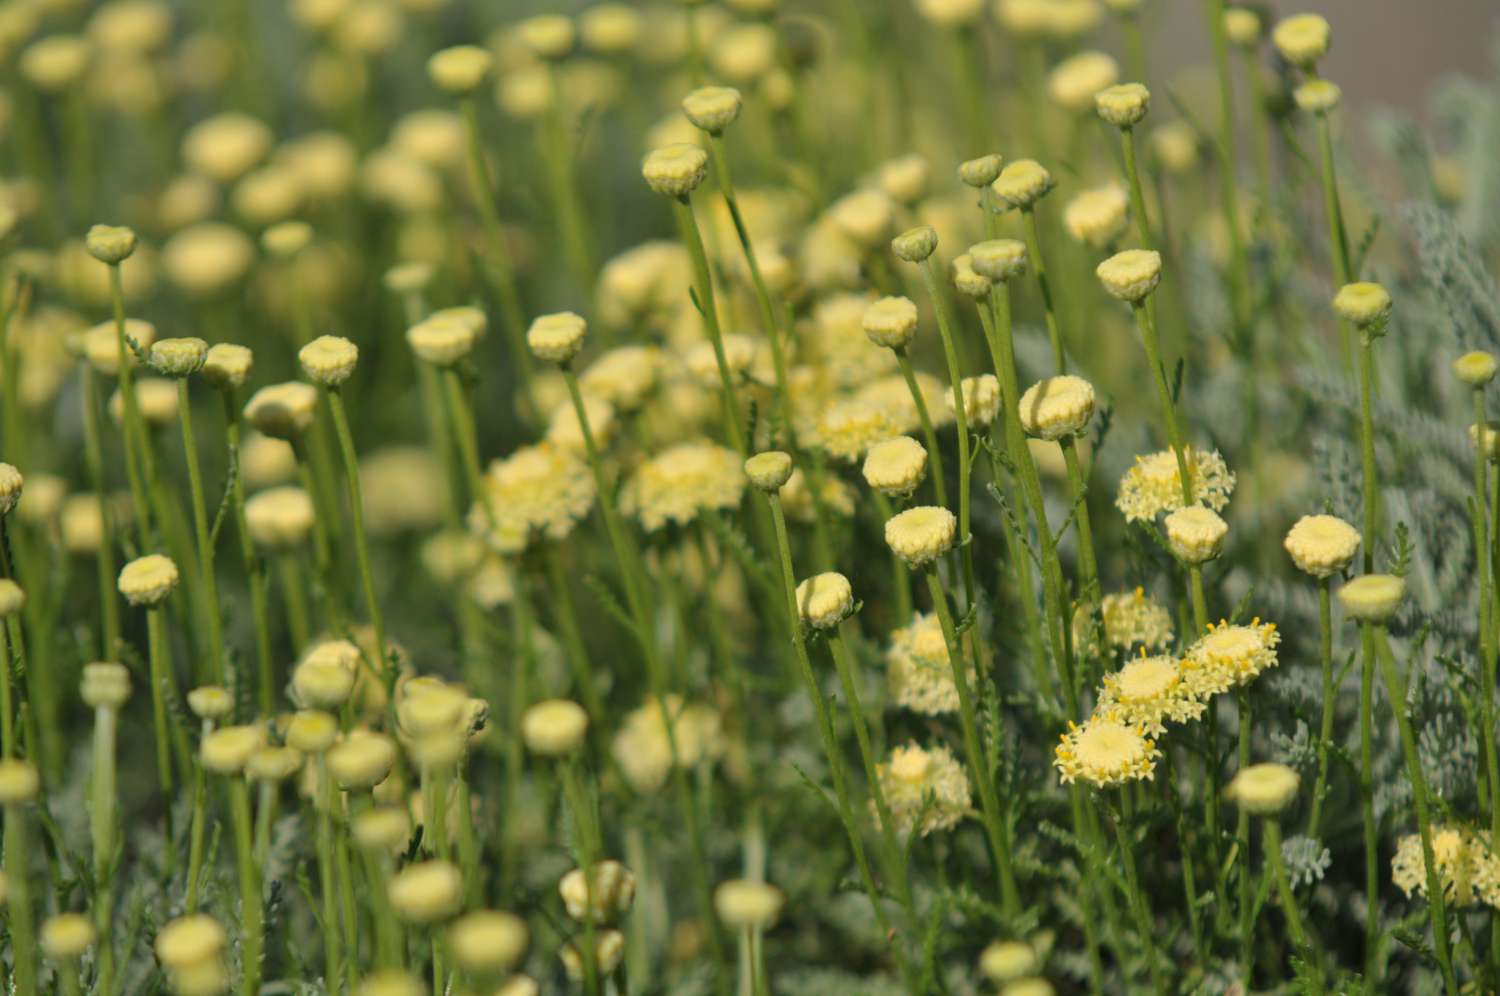 Lavendel-Baumwollpflanze mit kleinen gelben Blüten in Großaufnahme